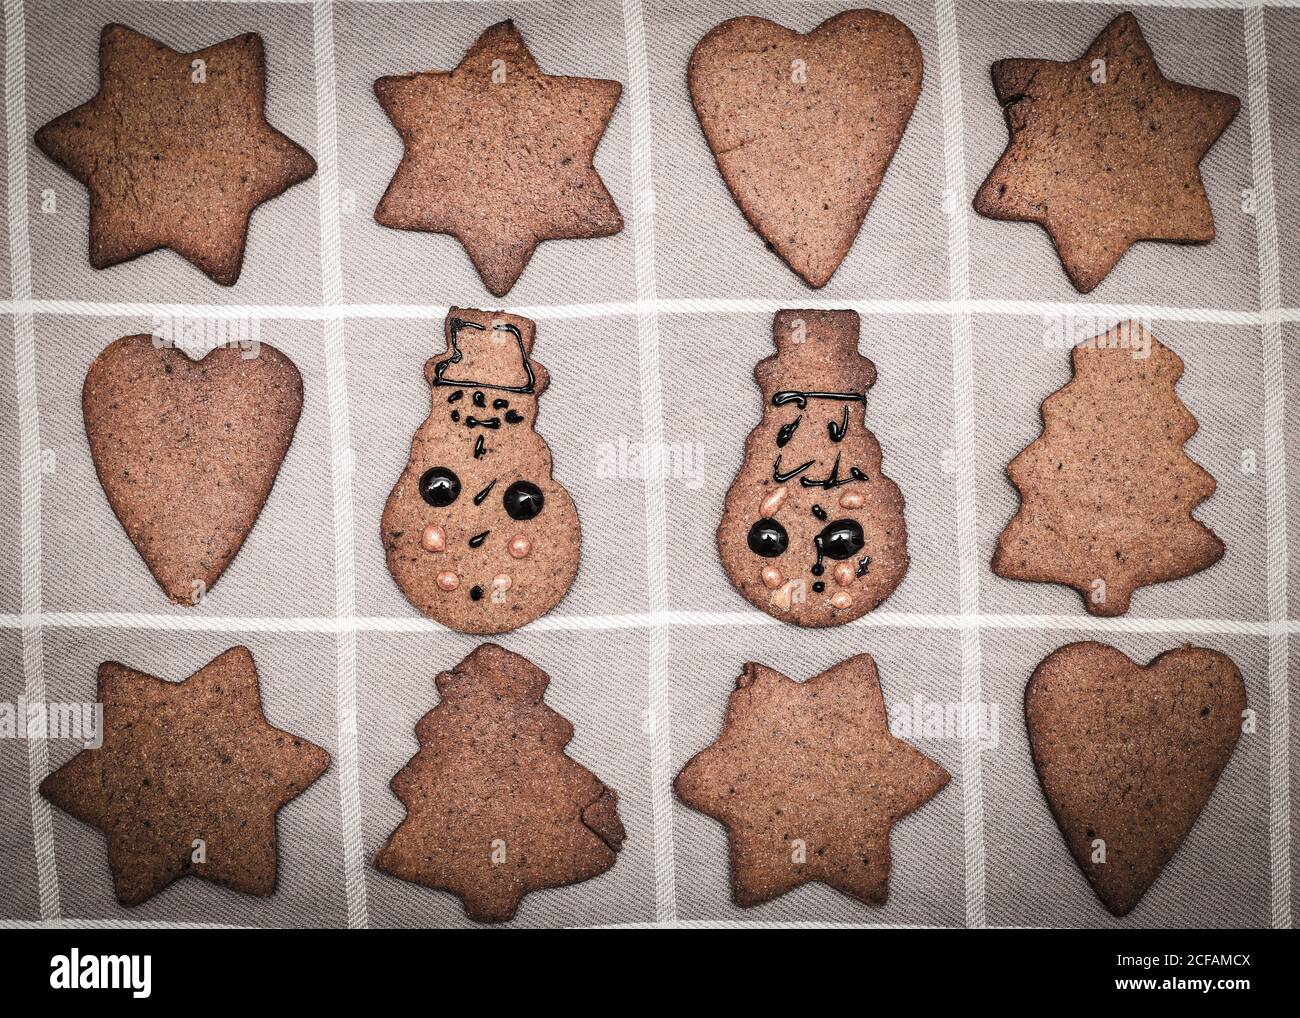 Mano adornado por los niños de Navidad pan de jengibre galleta de muñeco de nieve figurillas amidas otras galletas no decoradas Foto de stock